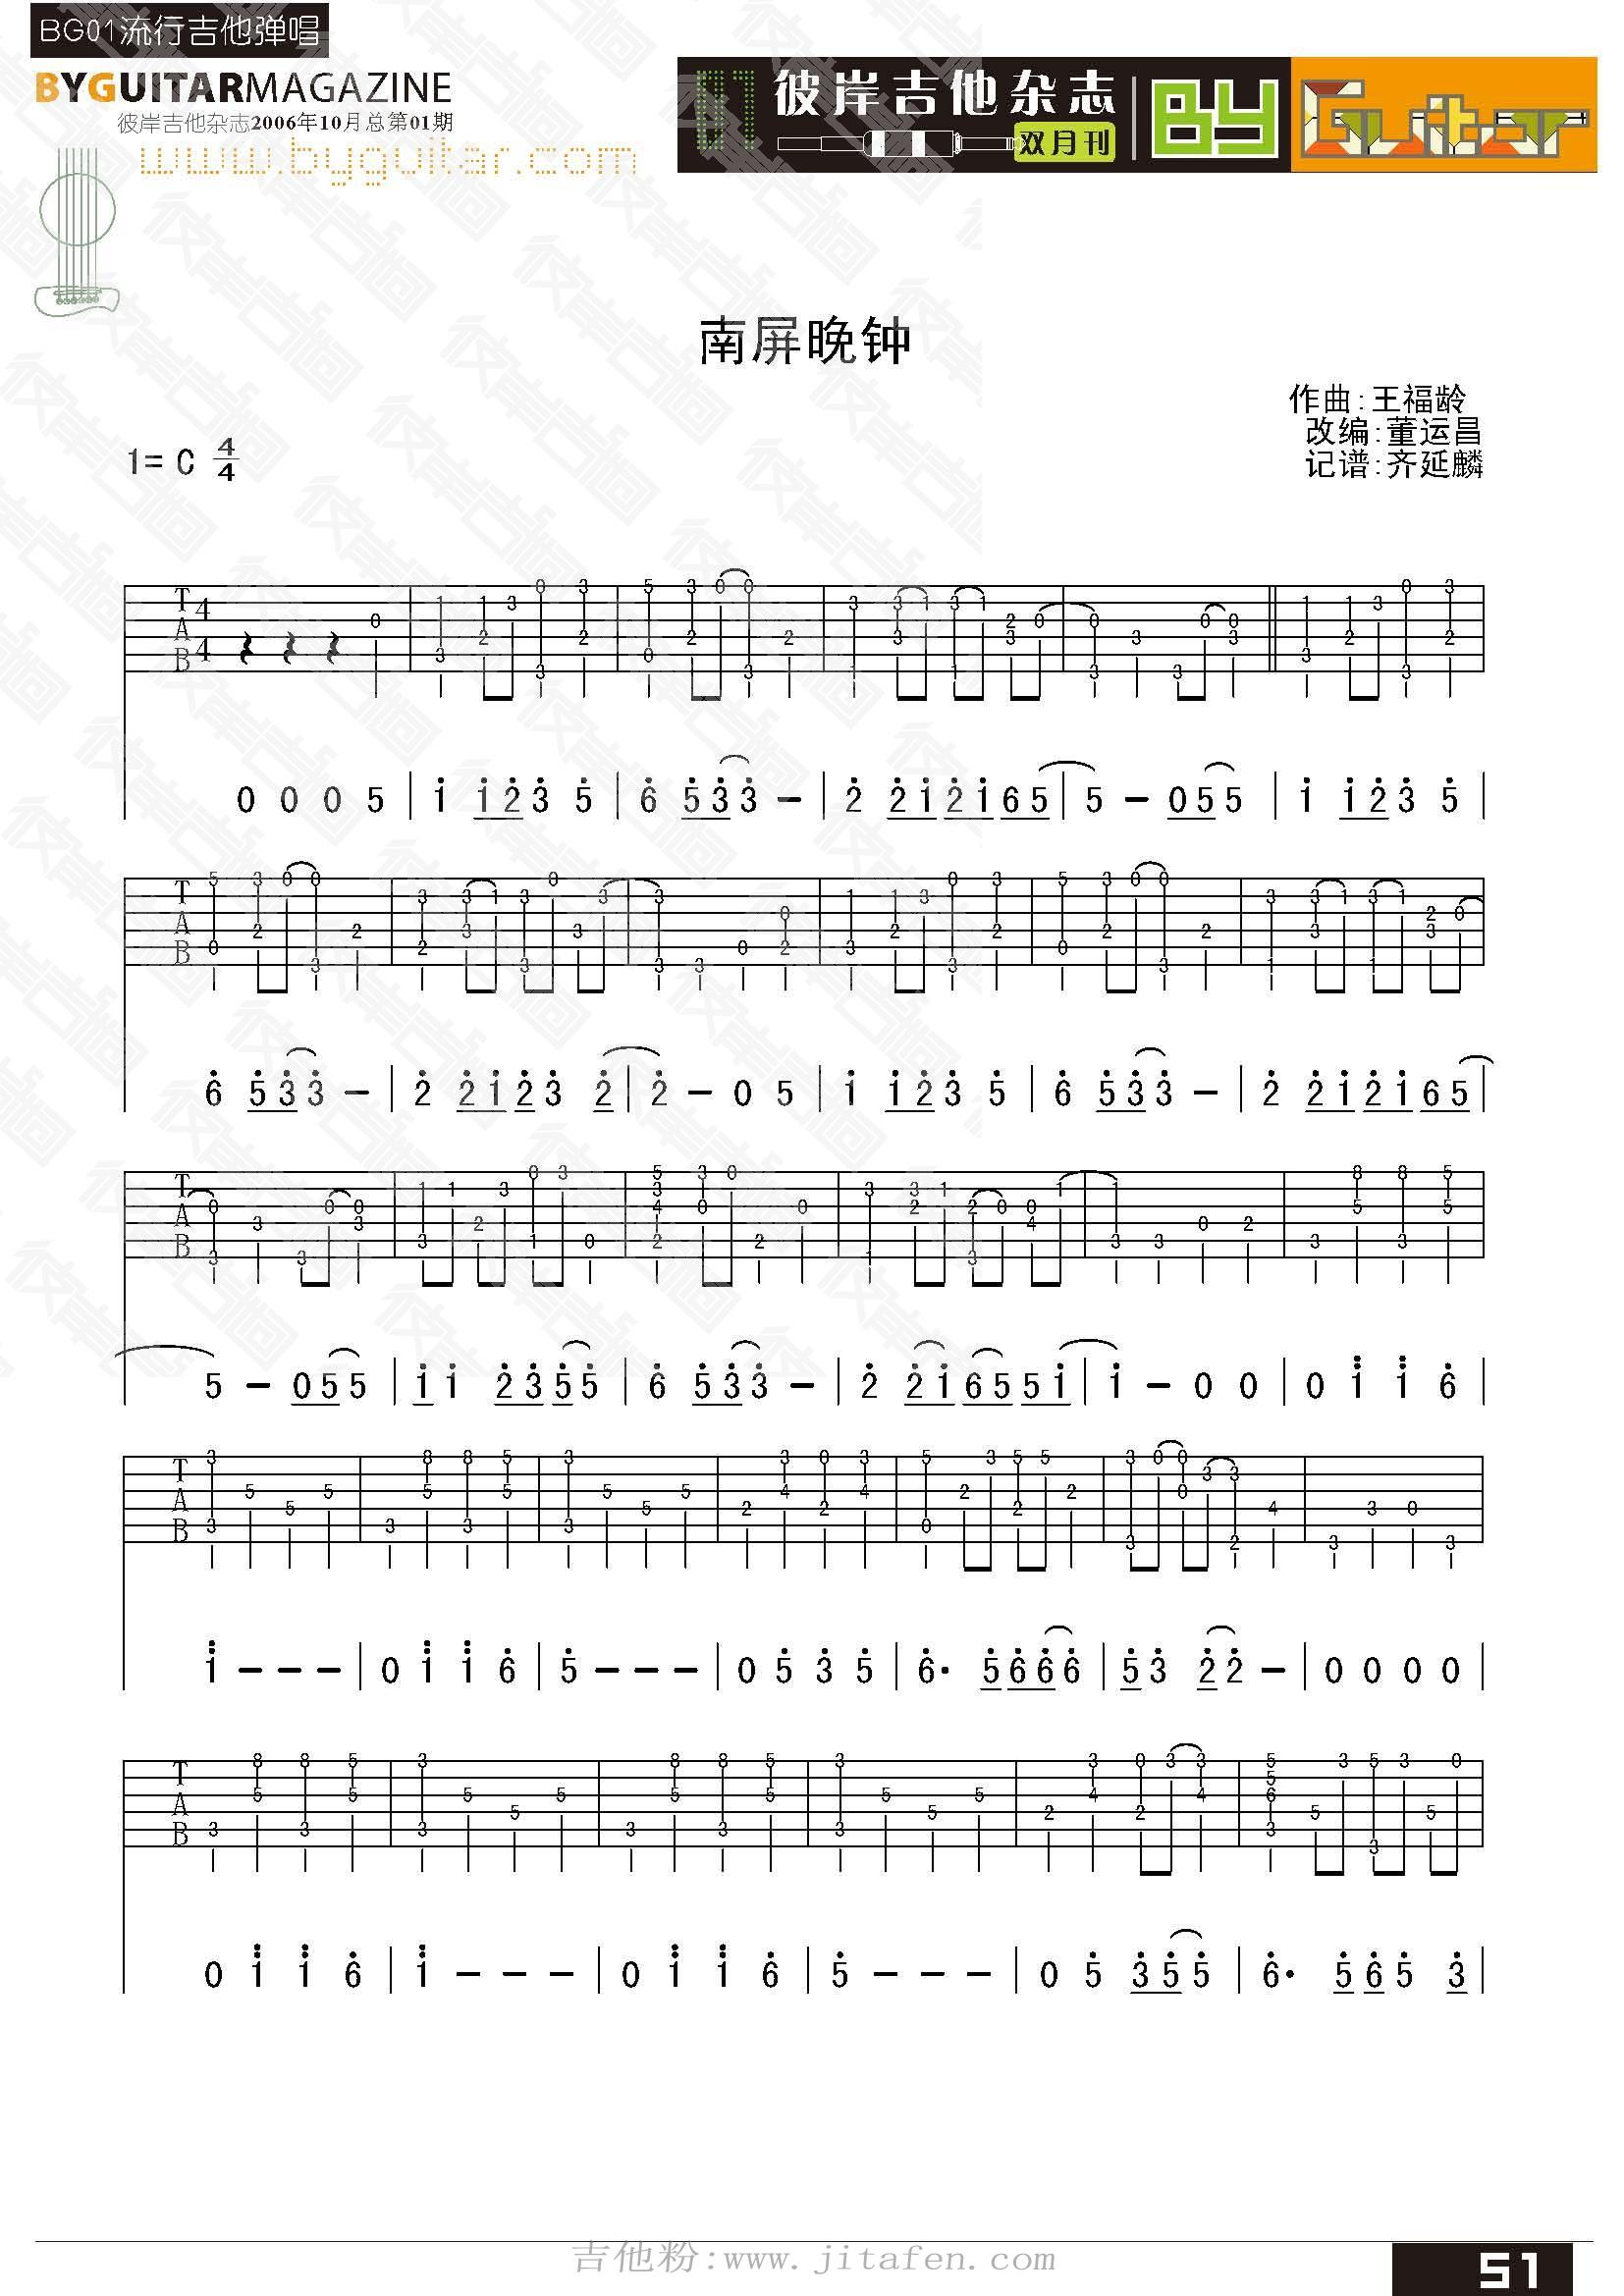 蔡琴 - 南屏晚钟 [弹唱 大伟吉他 教学] 吉他谱